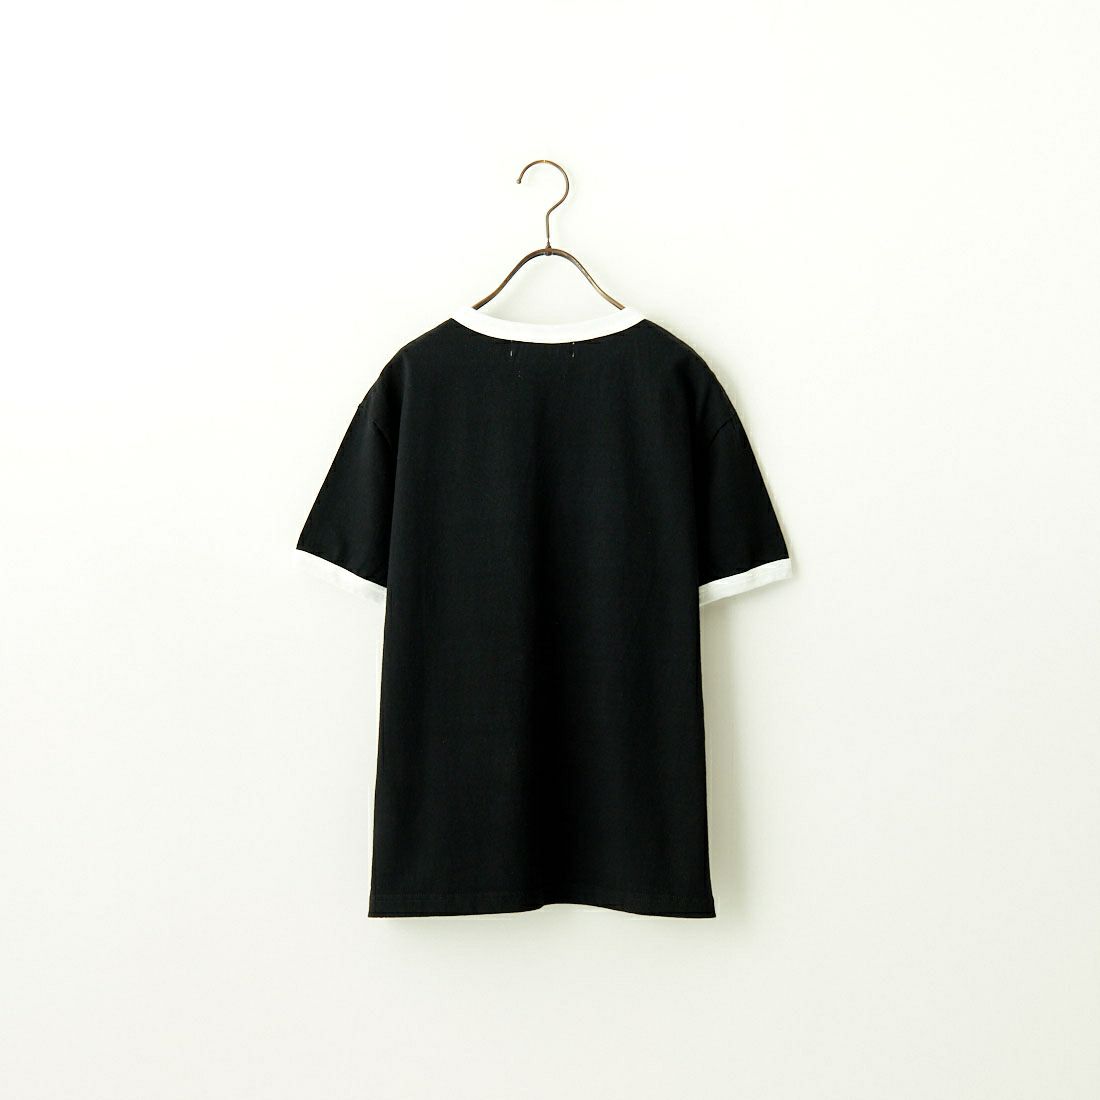 FIDELITY [フィデリティ] エンブレムリンガーTシャツ [FH-24575409] 01 BLACK